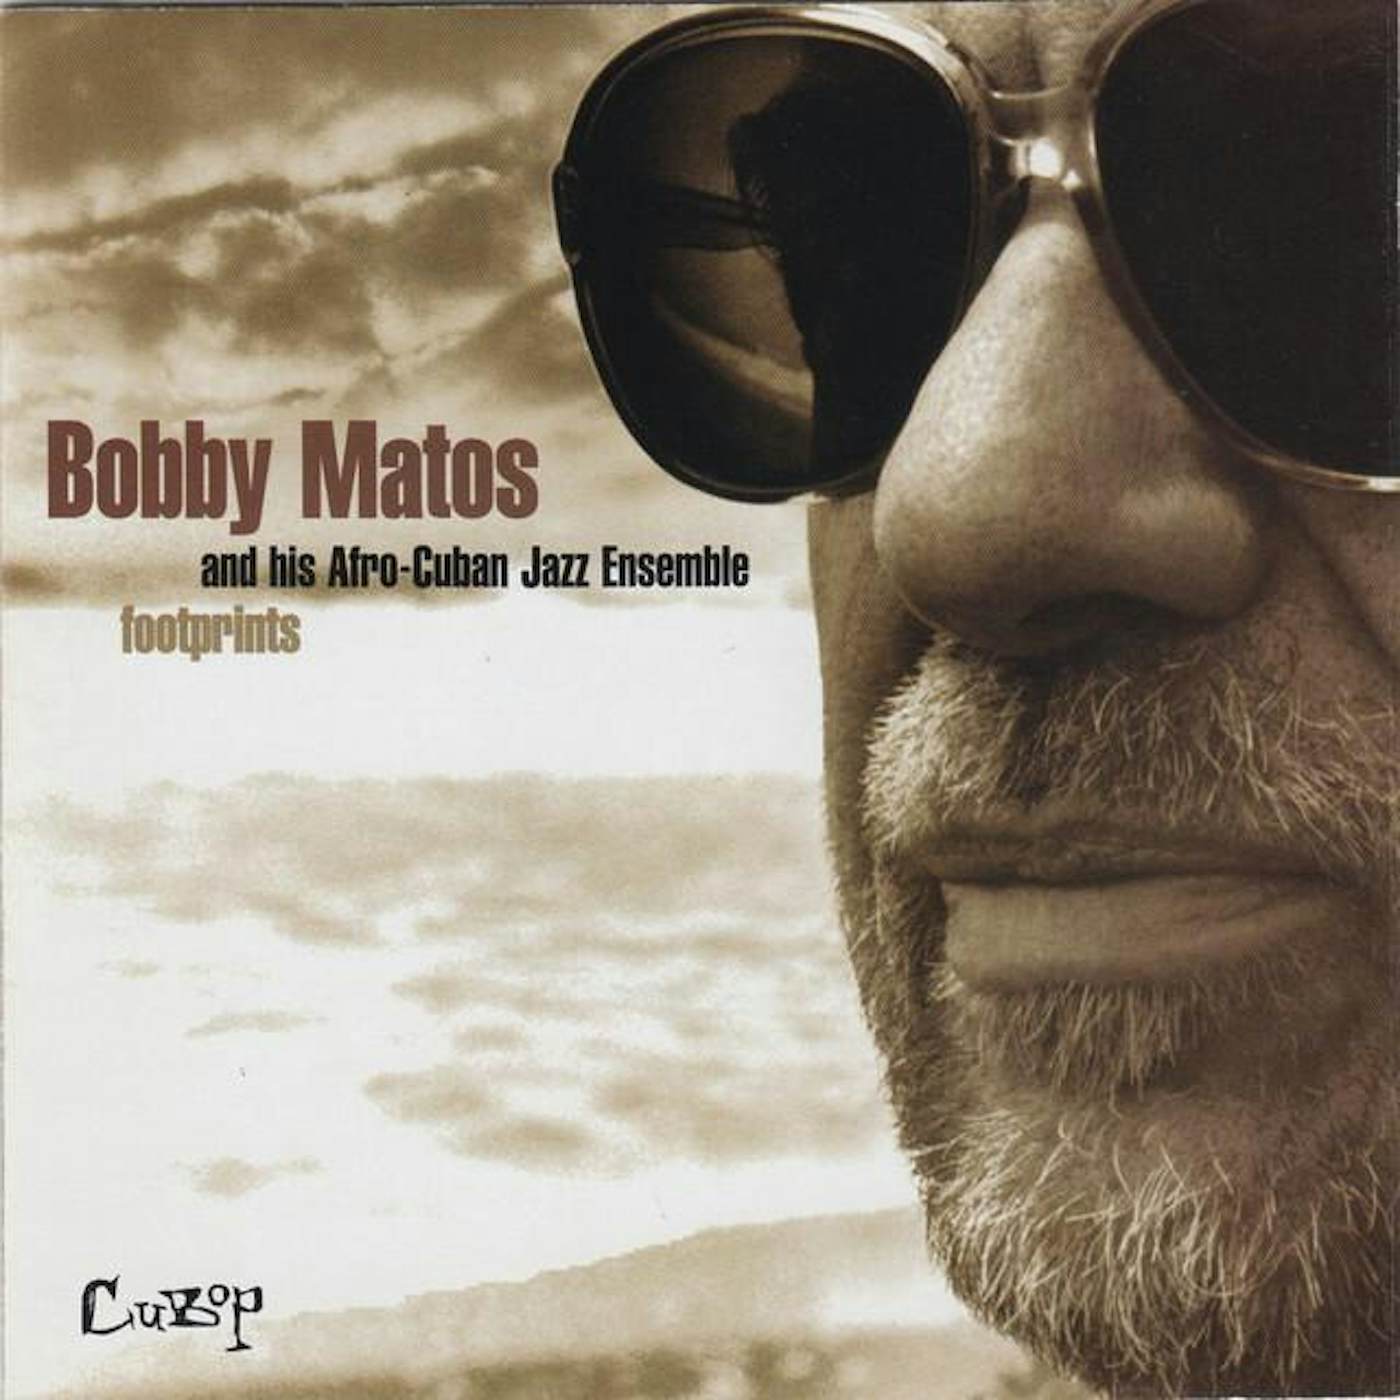 Bobby Matos and his Afro-Cuban Jazz Ensemble